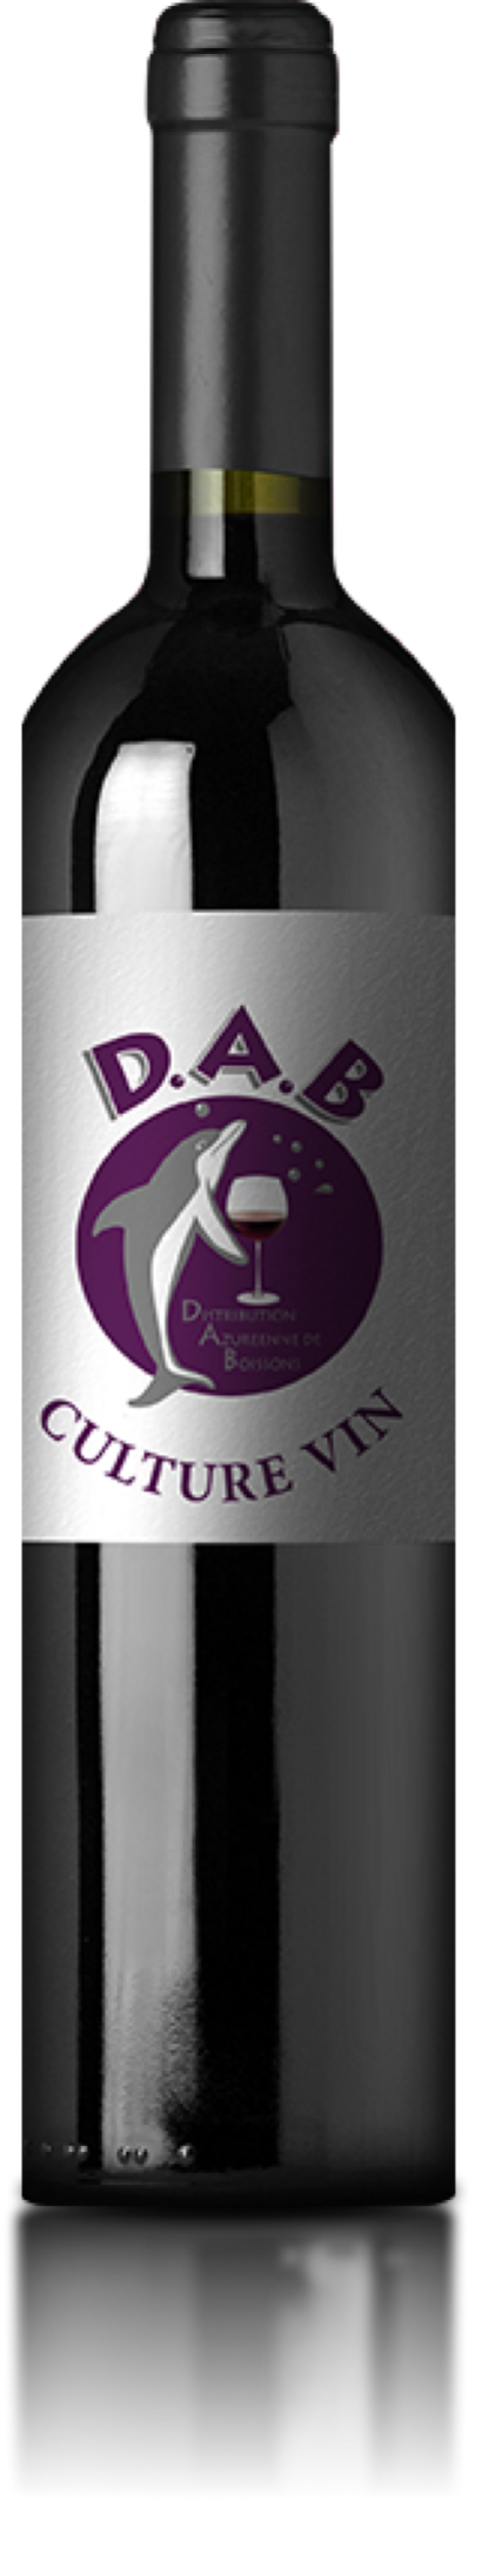 D.A.B • Vins Détails